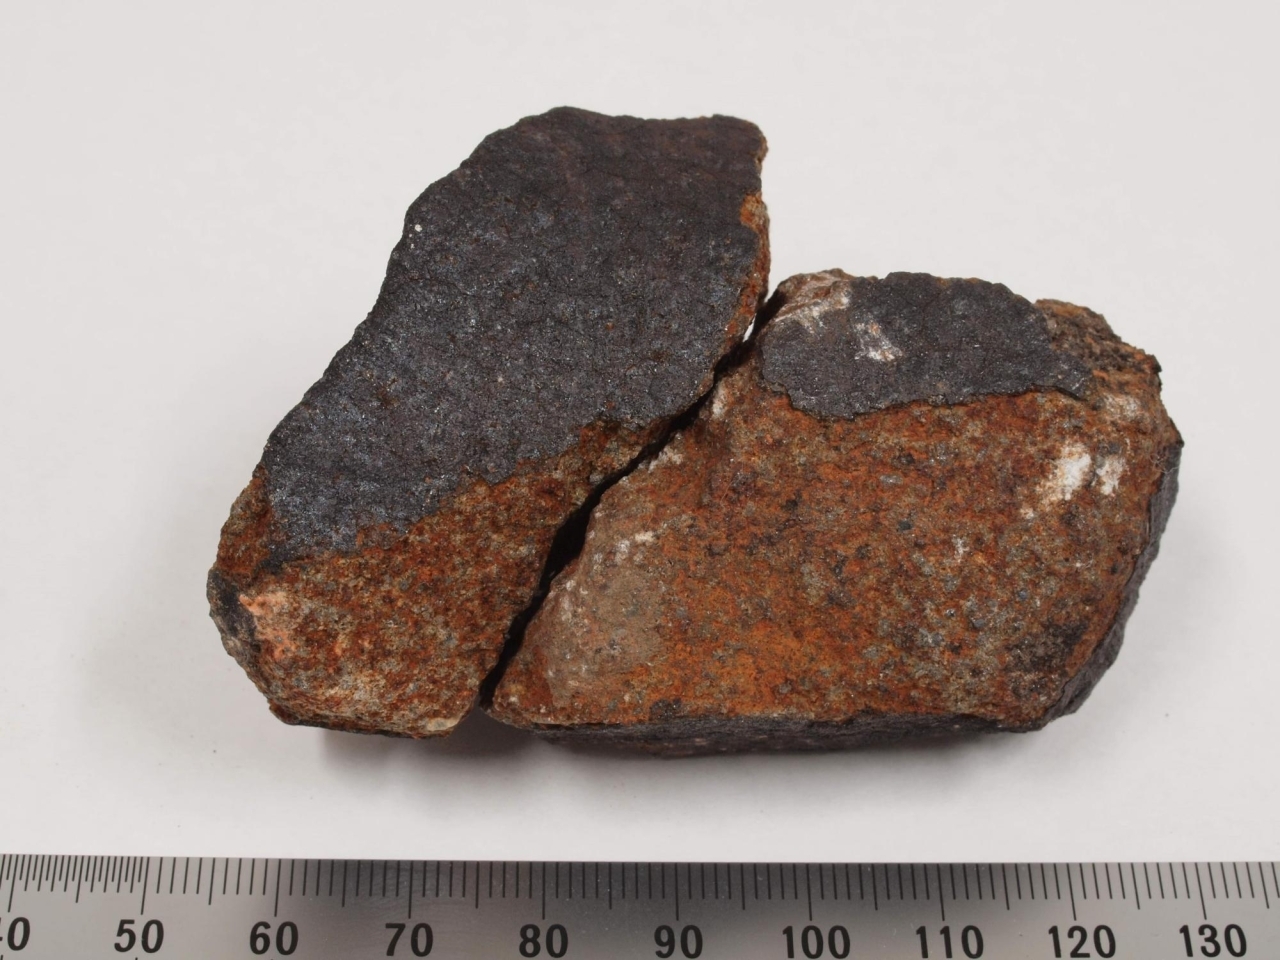 船橋市でも隕石を発見 習志野隕石 の２つ目をが船橋市に 国立科学博物館分析 船橋トピックス 身近にあるニュースを日々お届け まいぷれ 船橋市